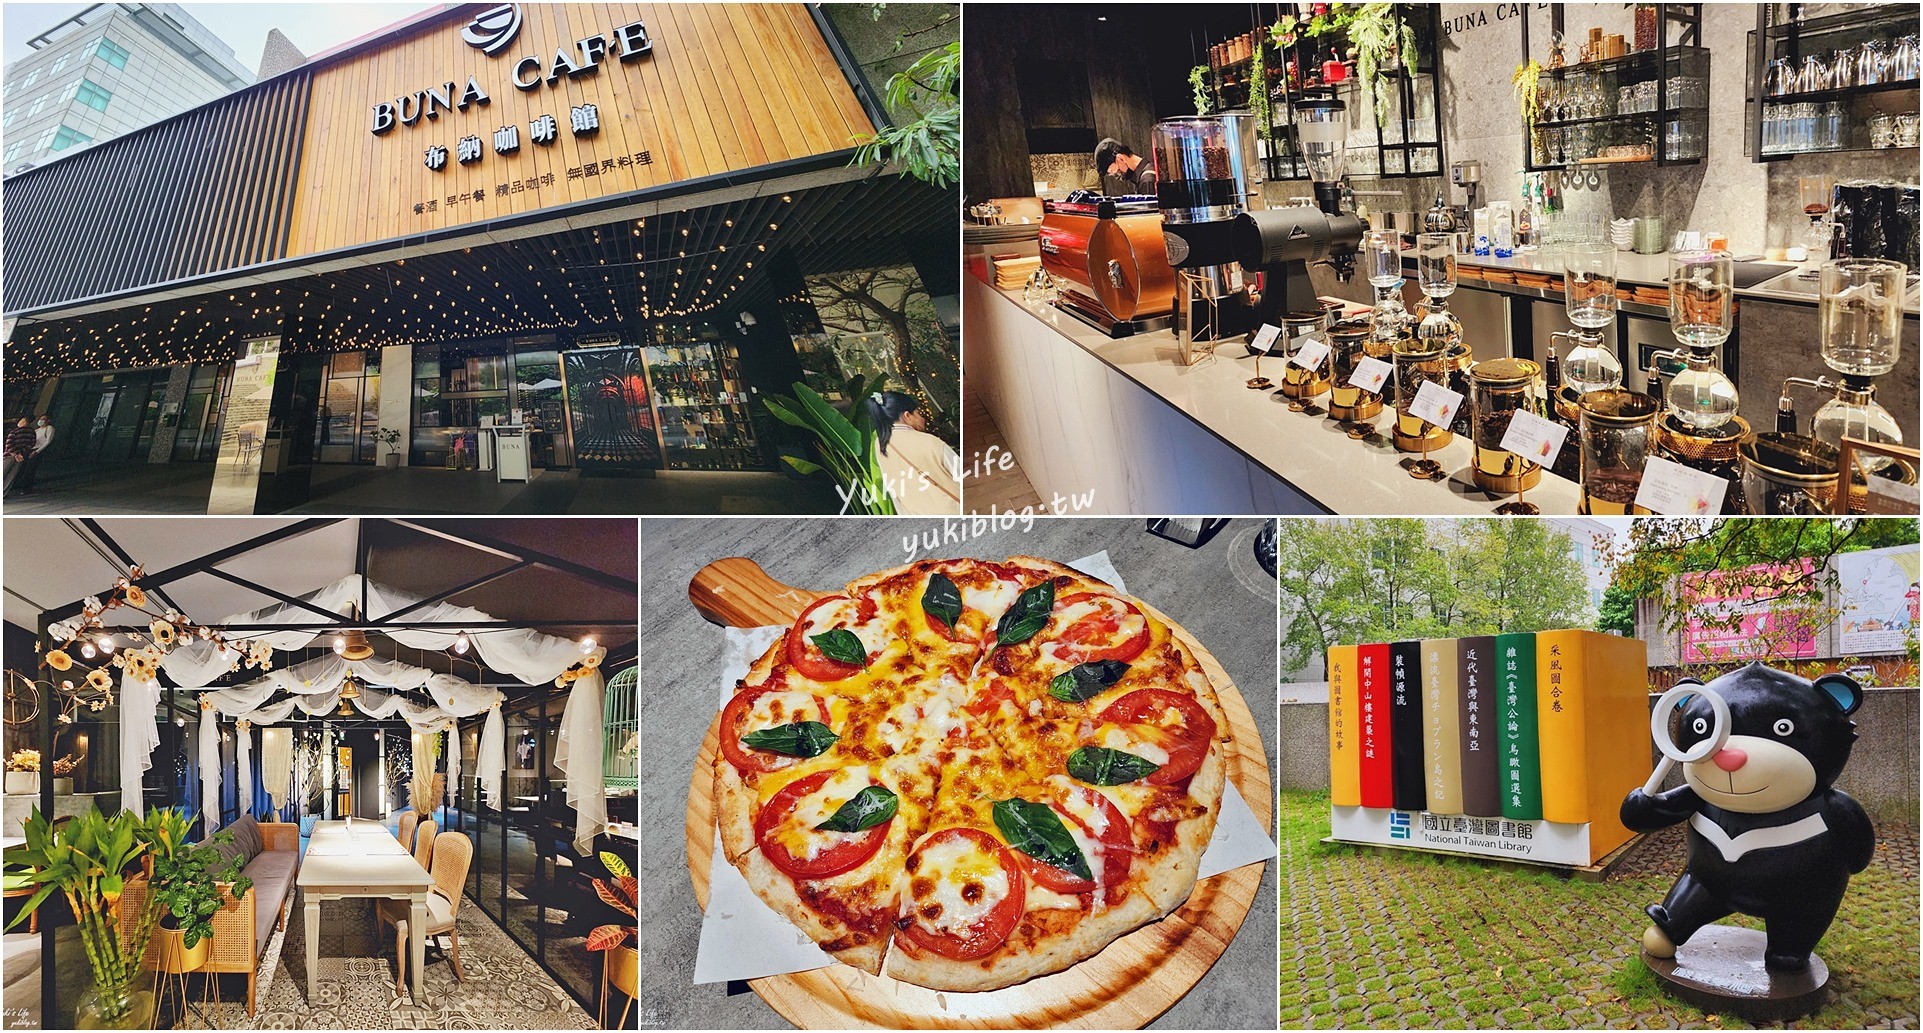 中和美食|布納咖啡中和公園館|四號公園不限時咖啡廳，百坪歐風聚餐好去處 - yukiblog.tw